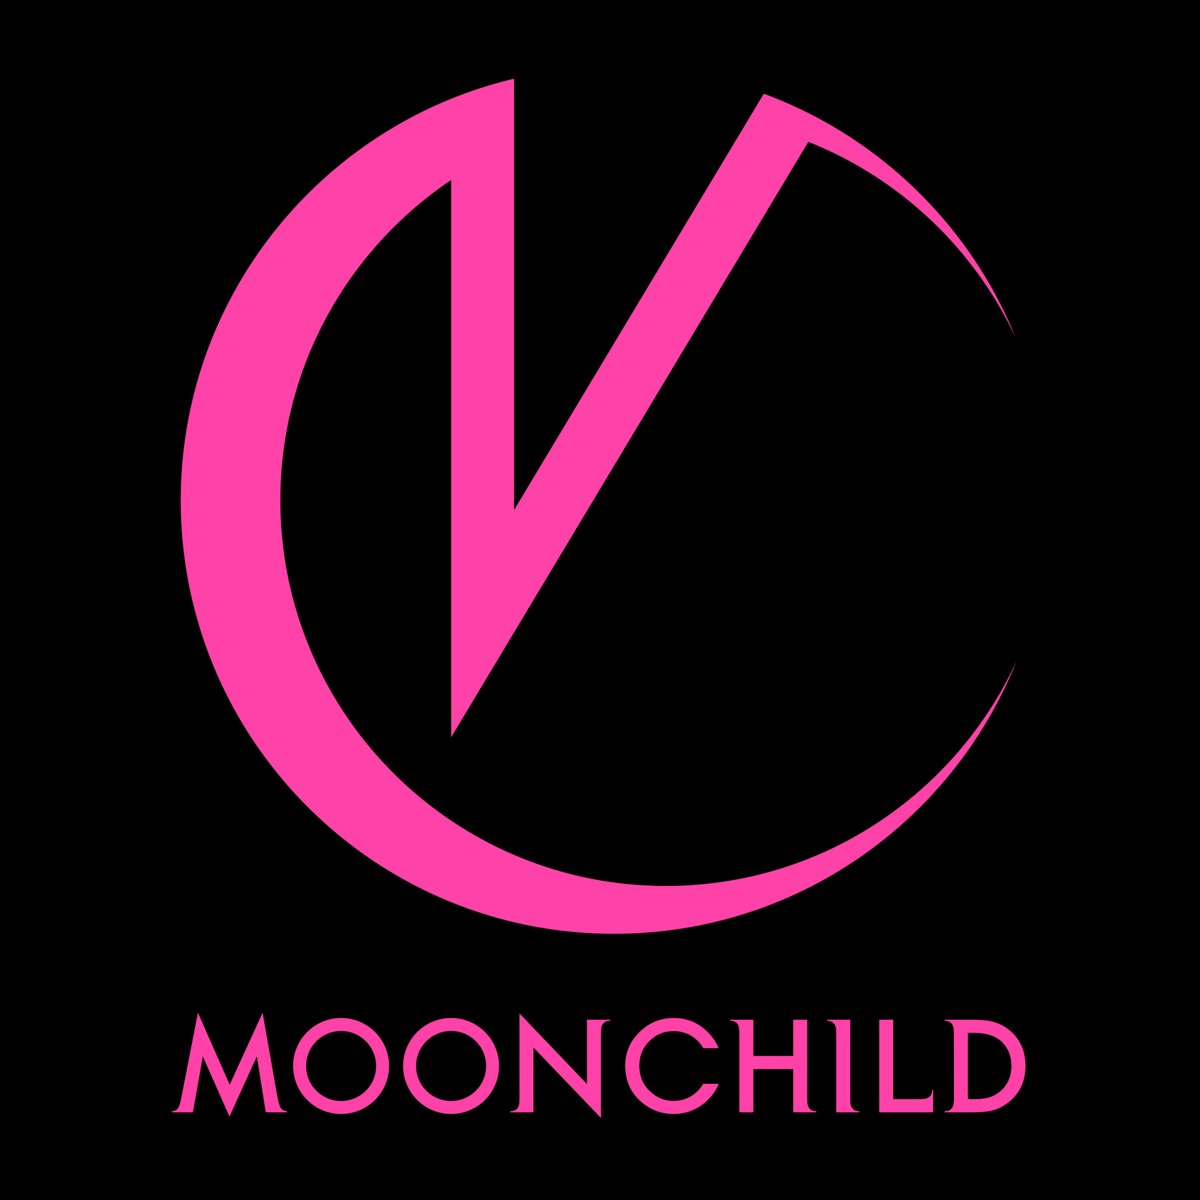 Moonchild_logo.jpeg